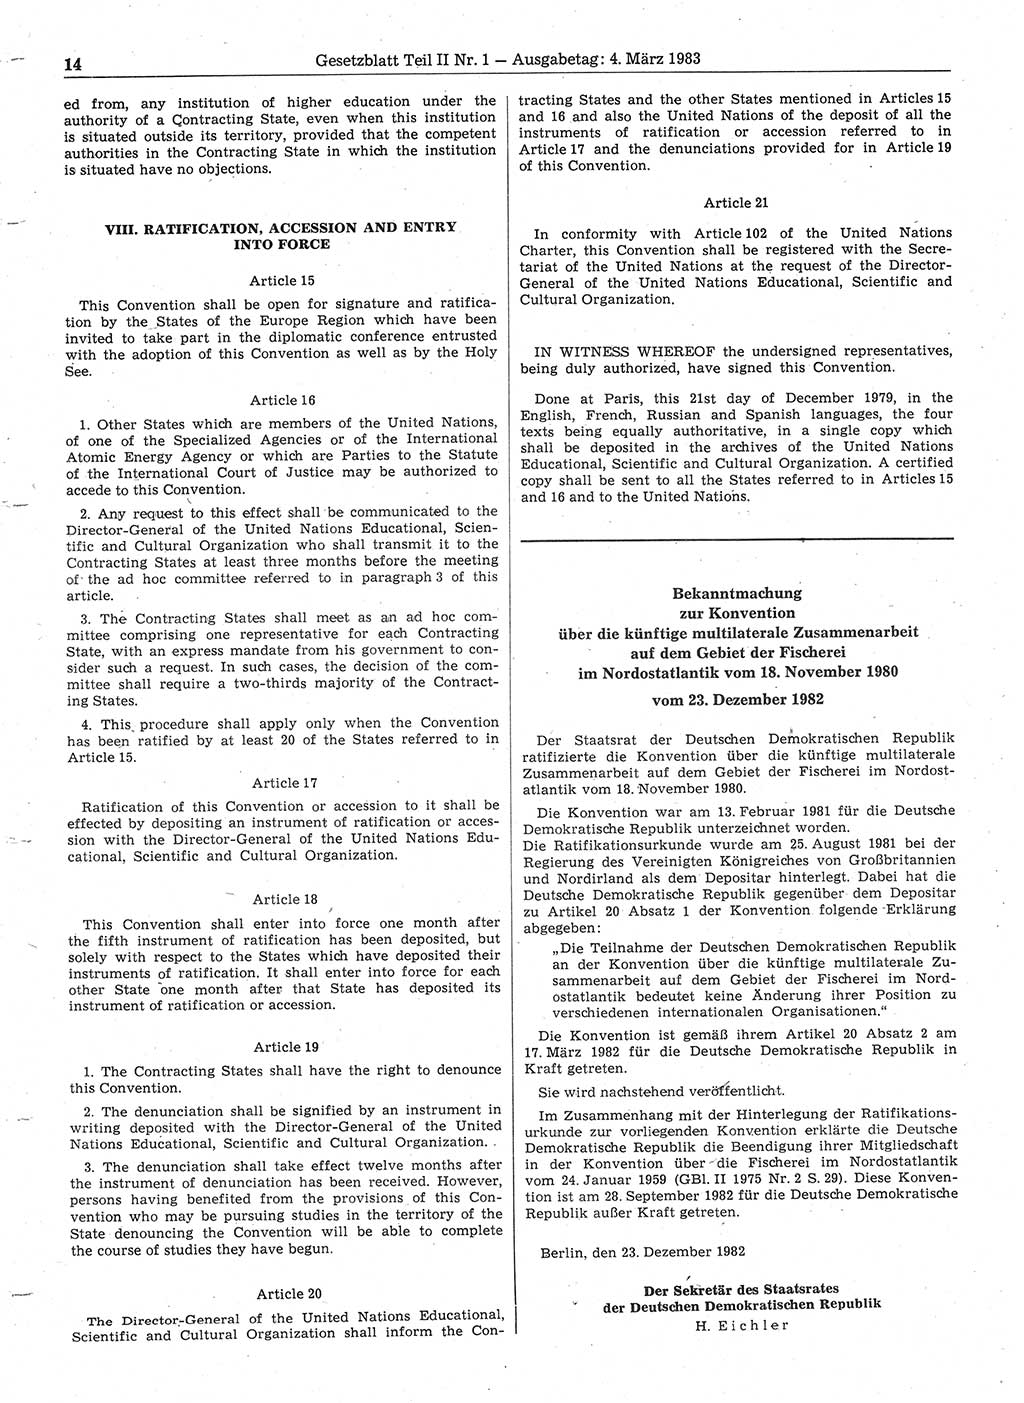 Gesetzblatt (GBl.) der Deutschen Demokratischen Republik (DDR) Teil ⅠⅠ 1983, Seite 14 (GBl. DDR ⅠⅠ 1983, S. 14)